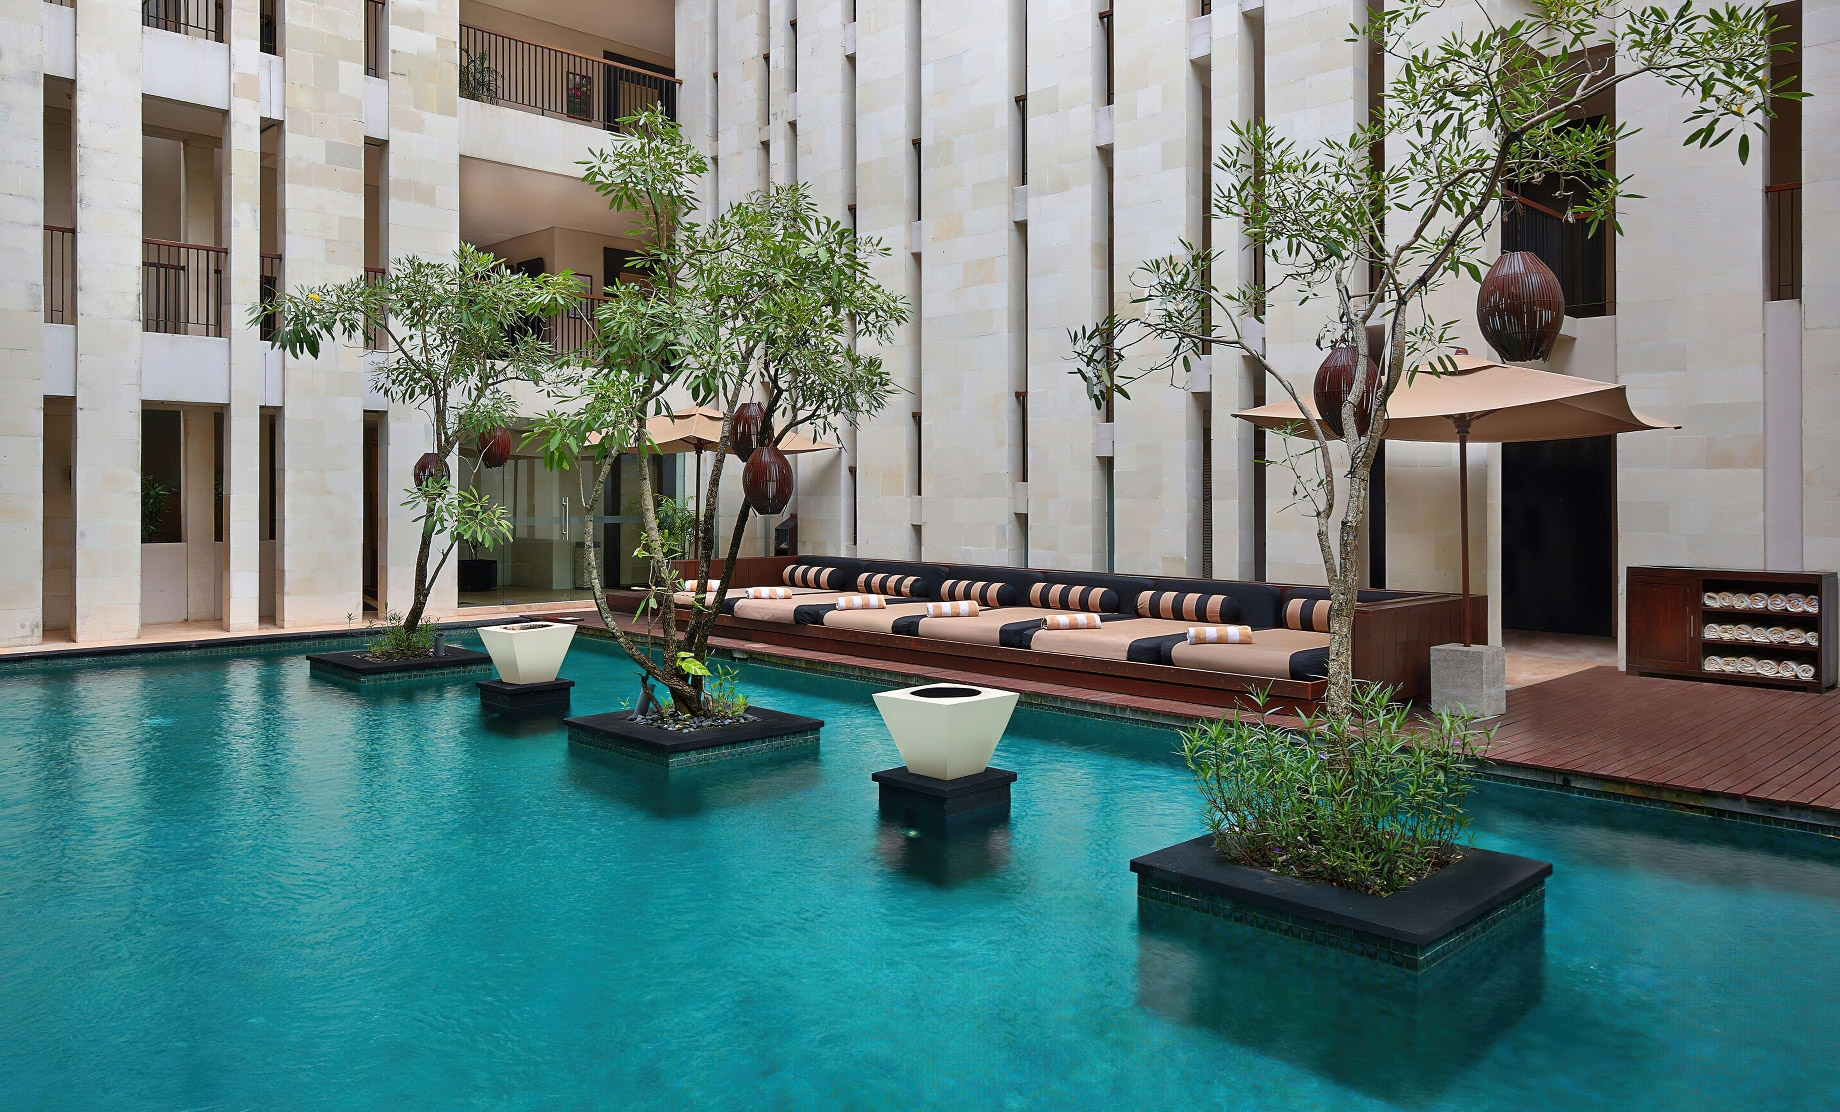 Anantara Seminyak Bali Resort – Bali, Indonesia – Pool Courtyard